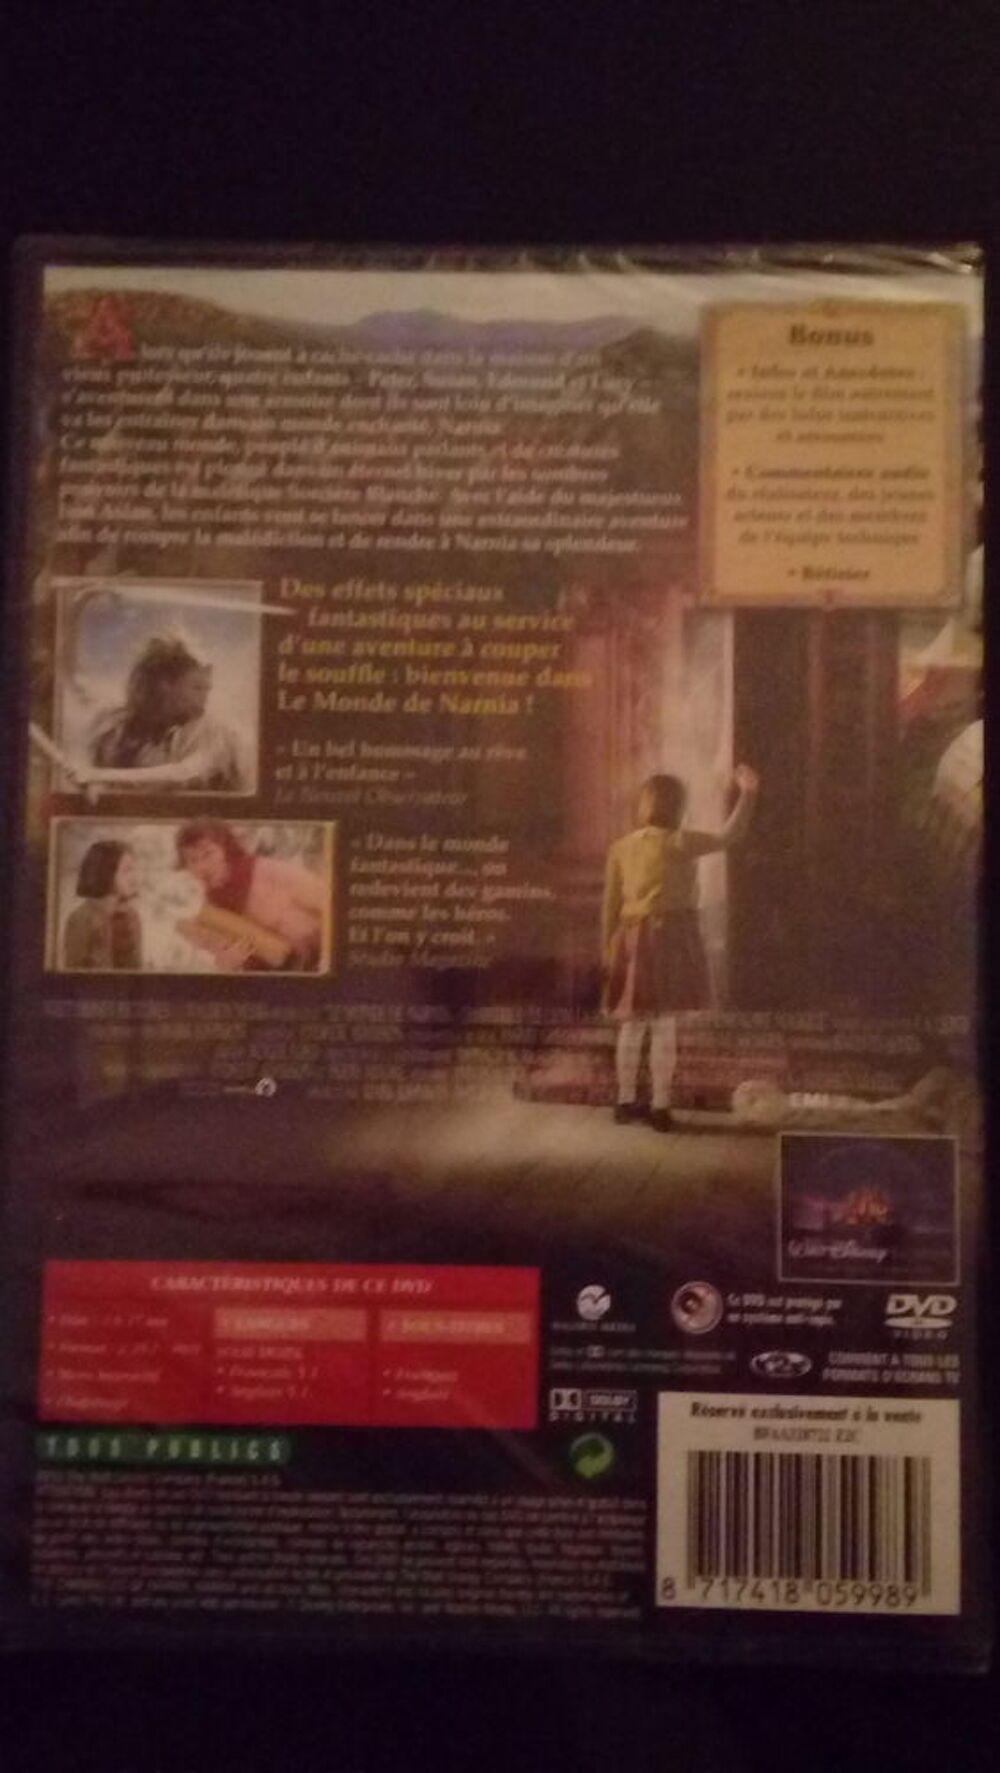 DVD &quot;Le Monde de Narnia&quot; - Chapitre 1 (Neuf) DVD et blu-ray